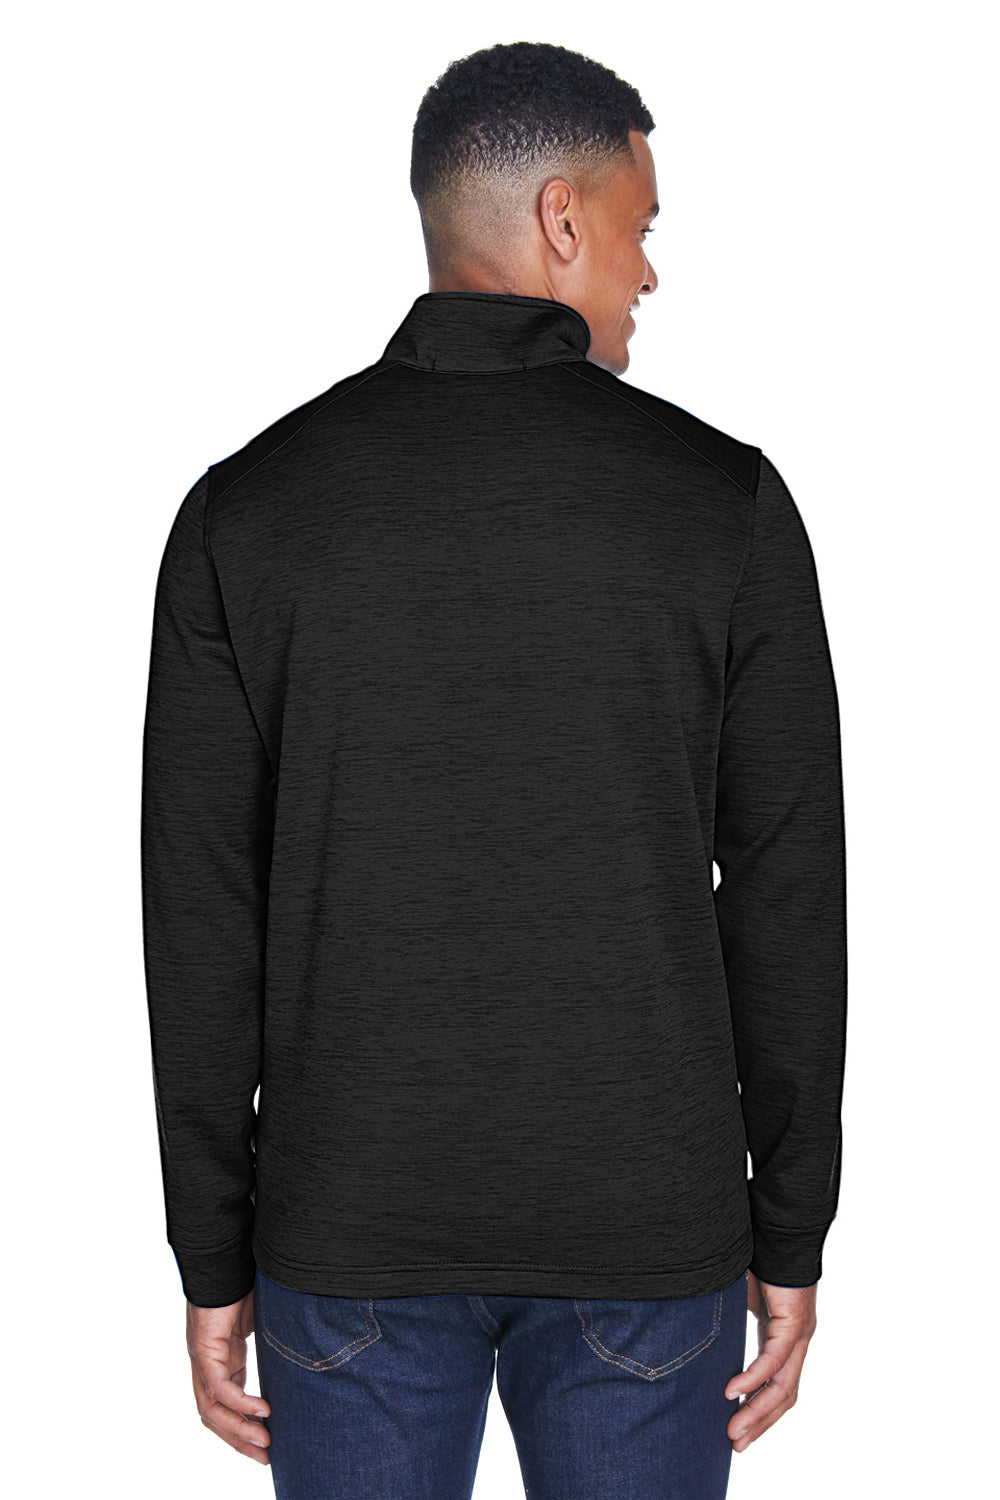 Devon & Jones DG798 Mens Newbury Fleece 1/4 Zip Sweatshirt Black Back